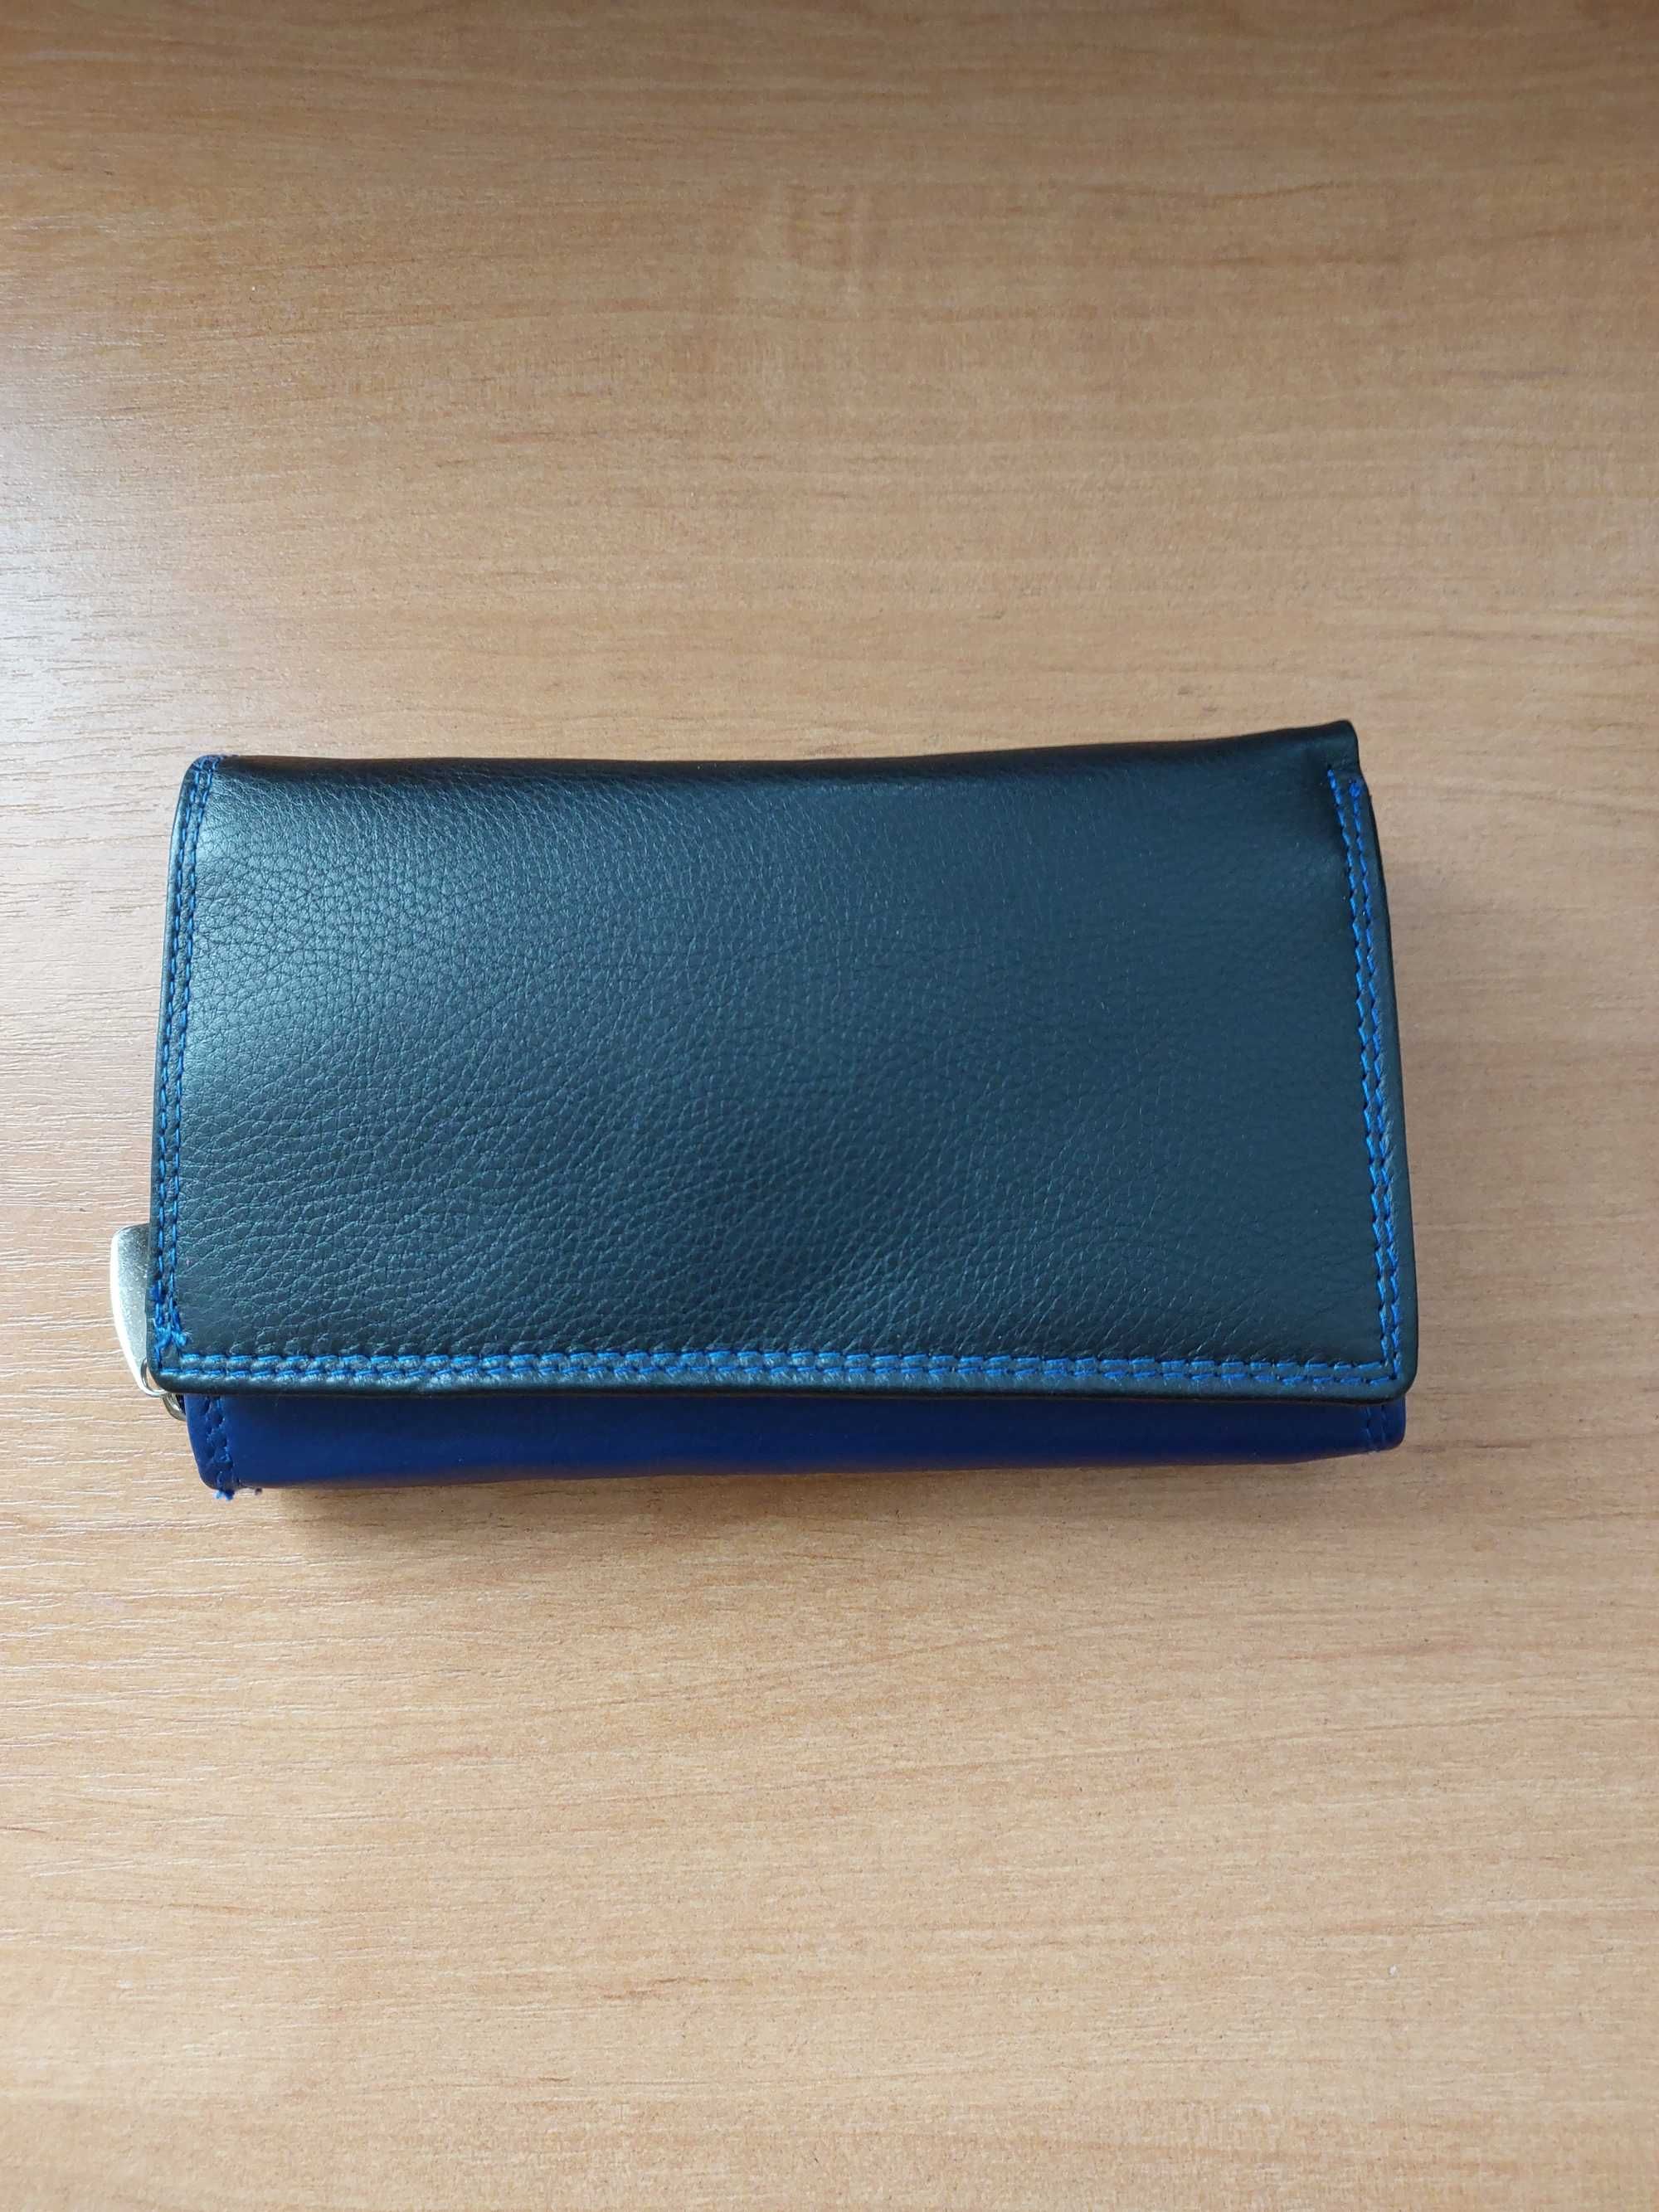 Жіночий гаманець синього кольору